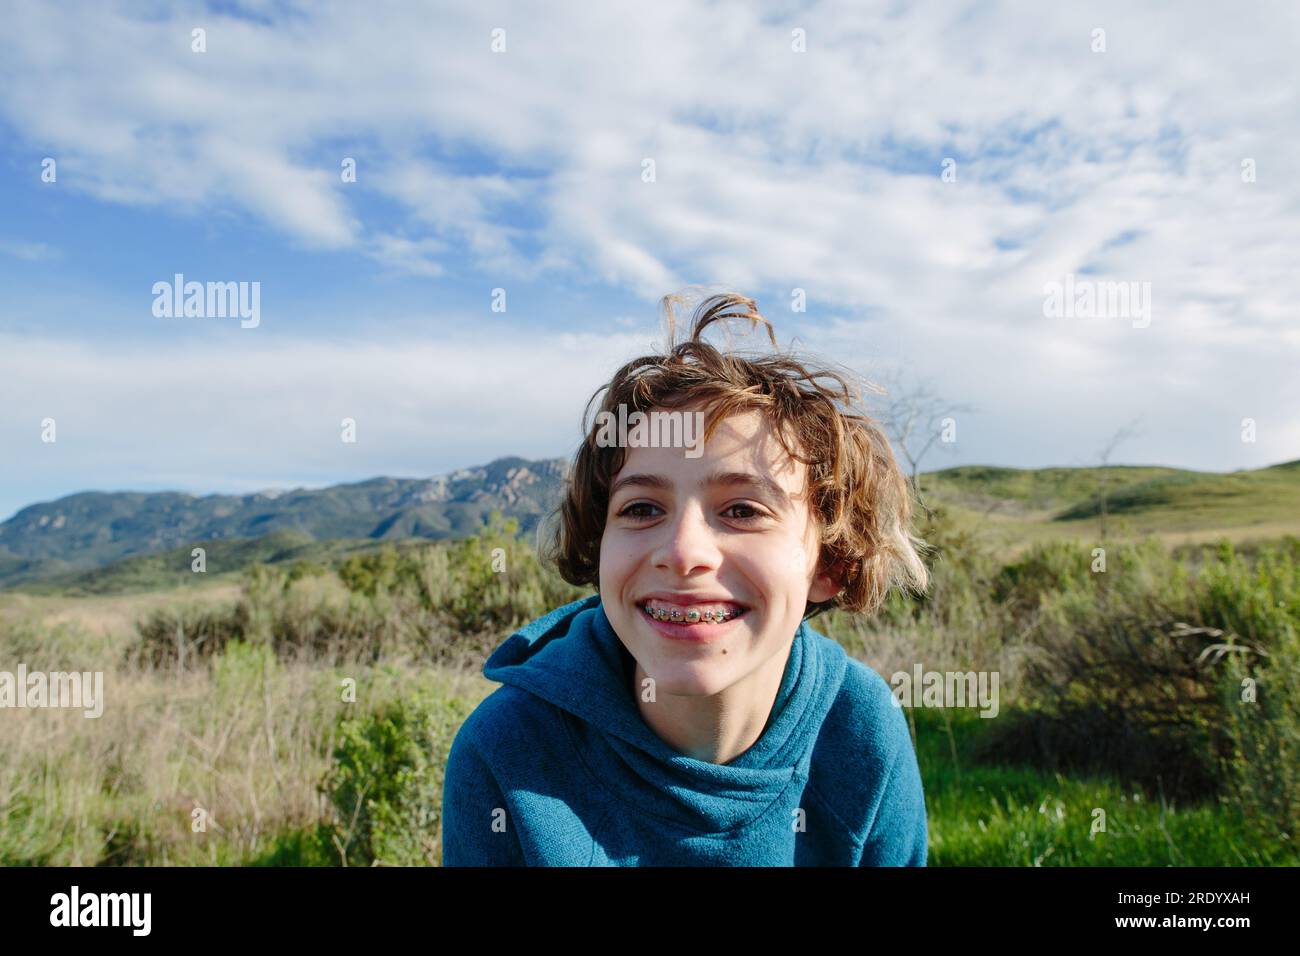 Jeune fille adolescente avec des bretelles sourit alors qu'à l'extérieur dans la nature Banque D'Images